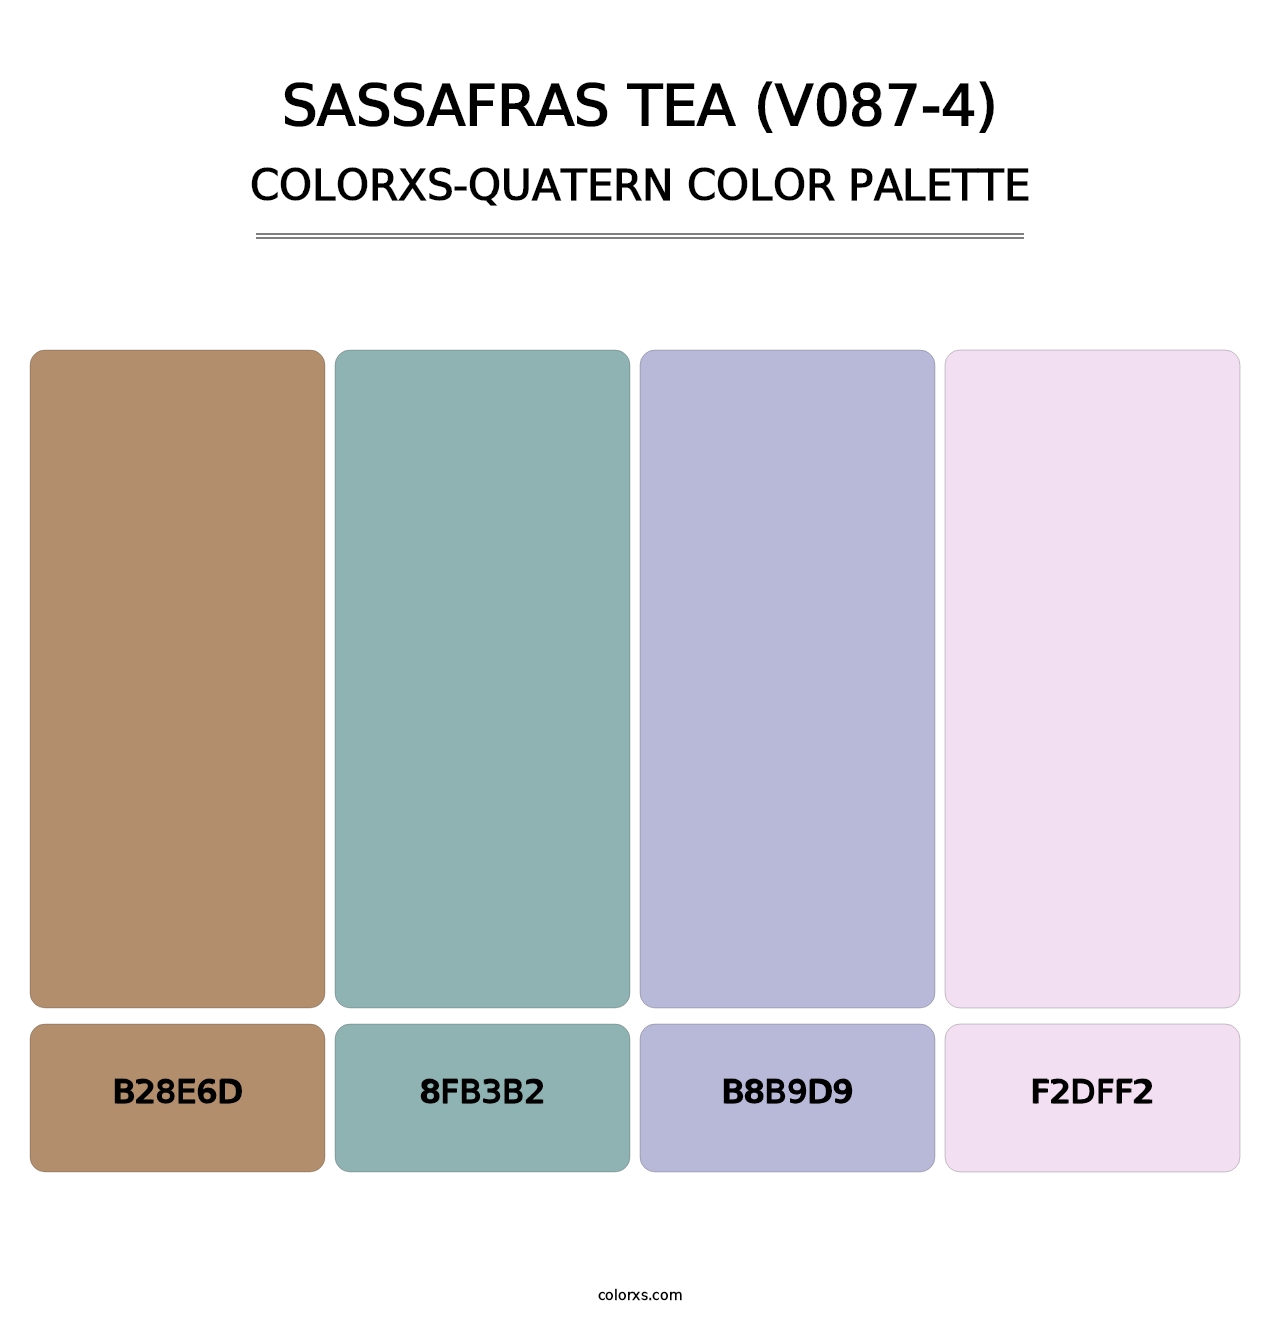 Sassafras Tea (V087-4) - Colorxs Quatern Palette